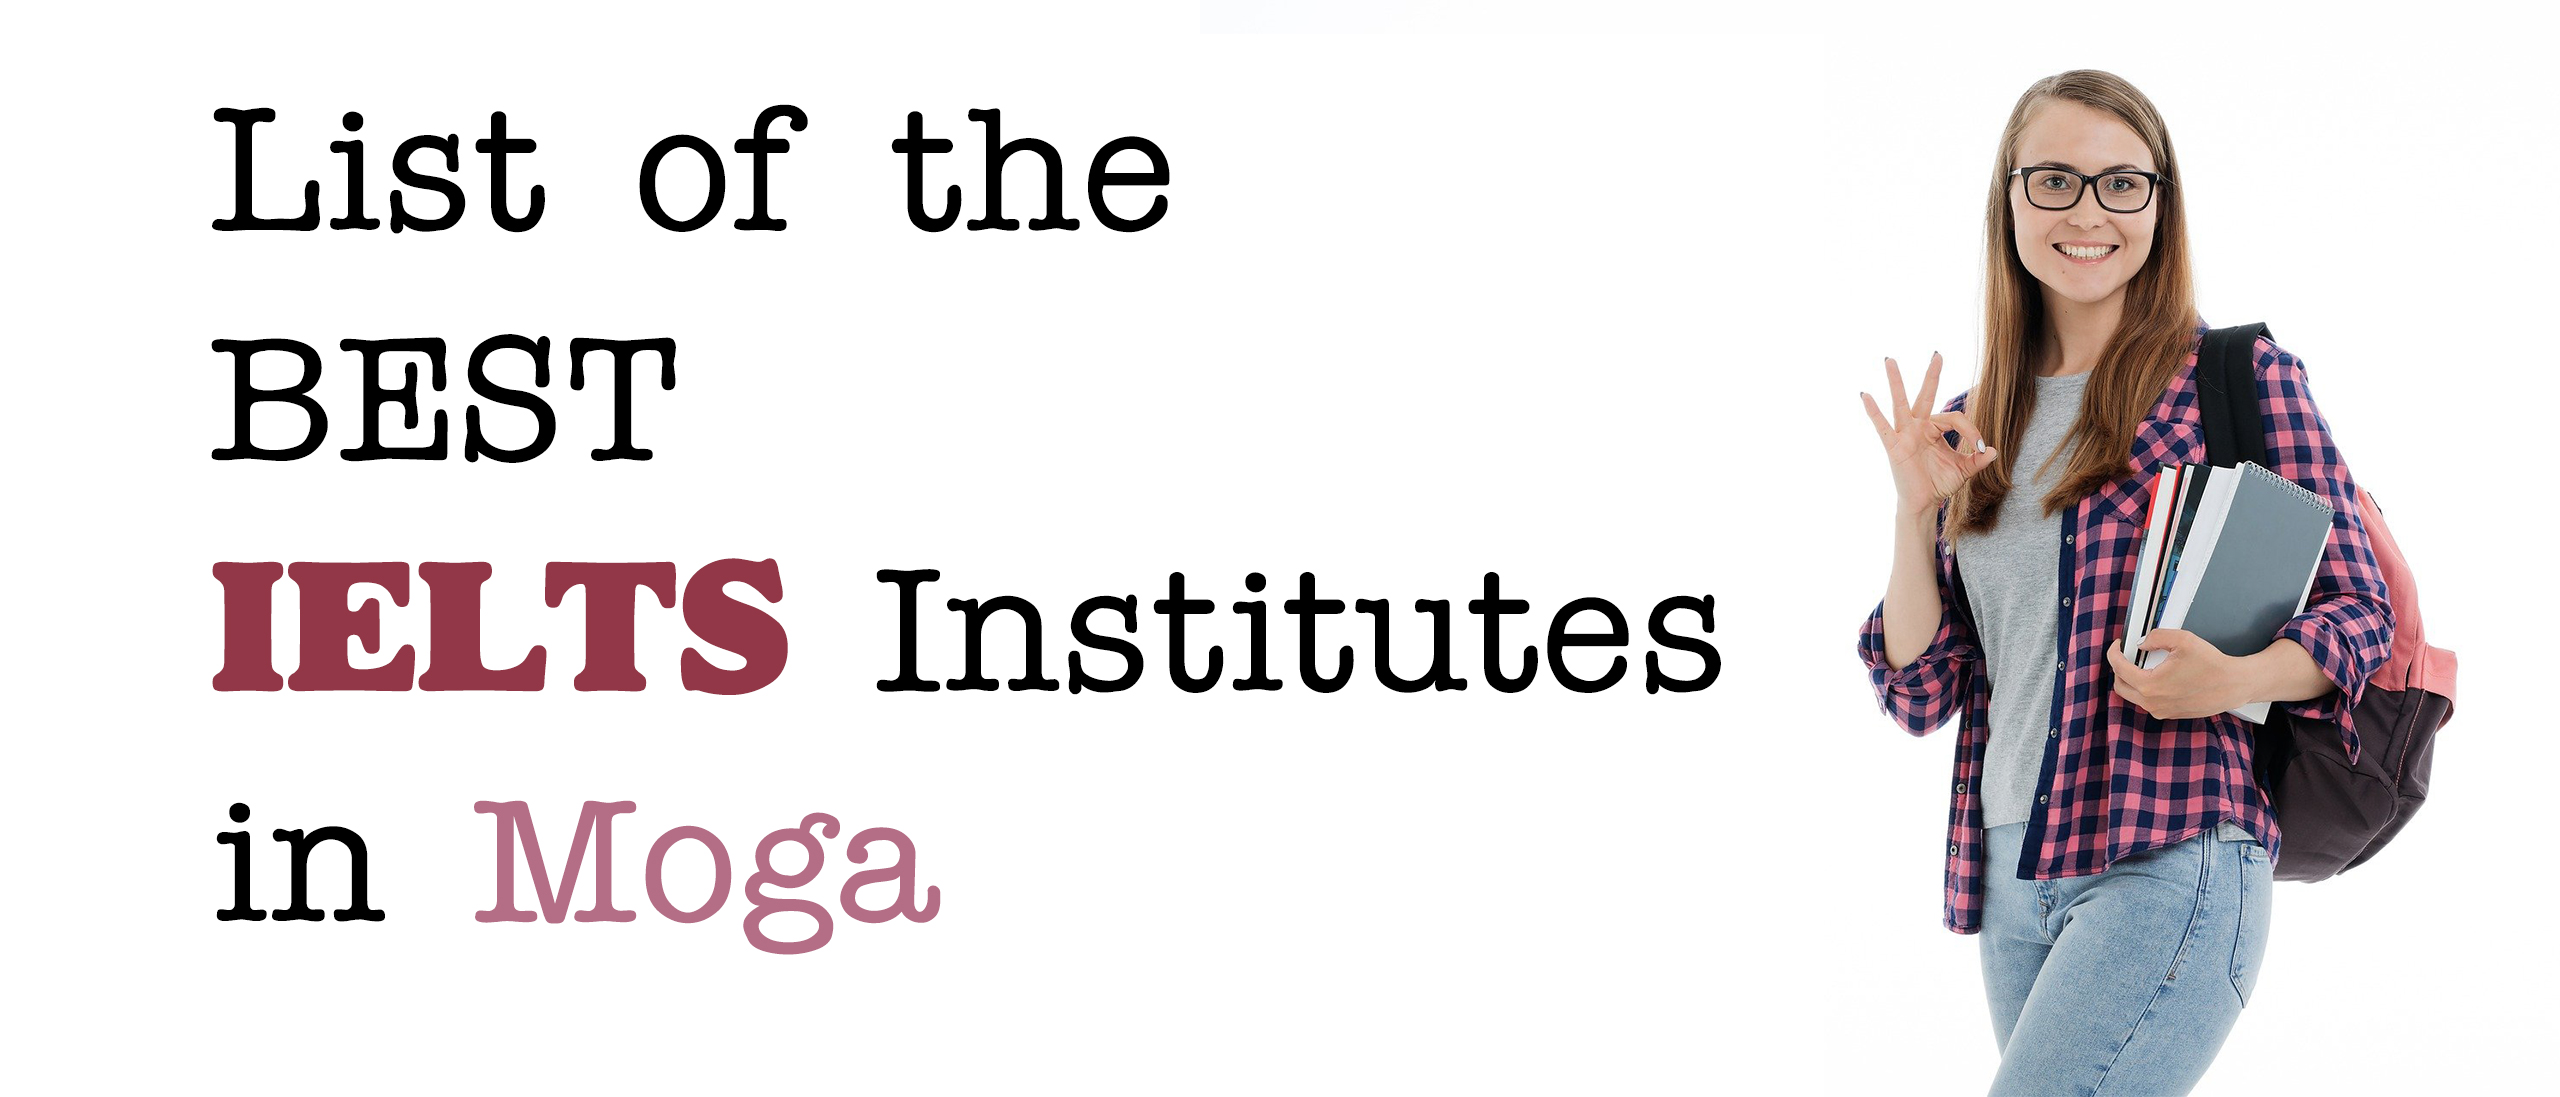 List of Top 10 Best IELTS Institutes in Moga